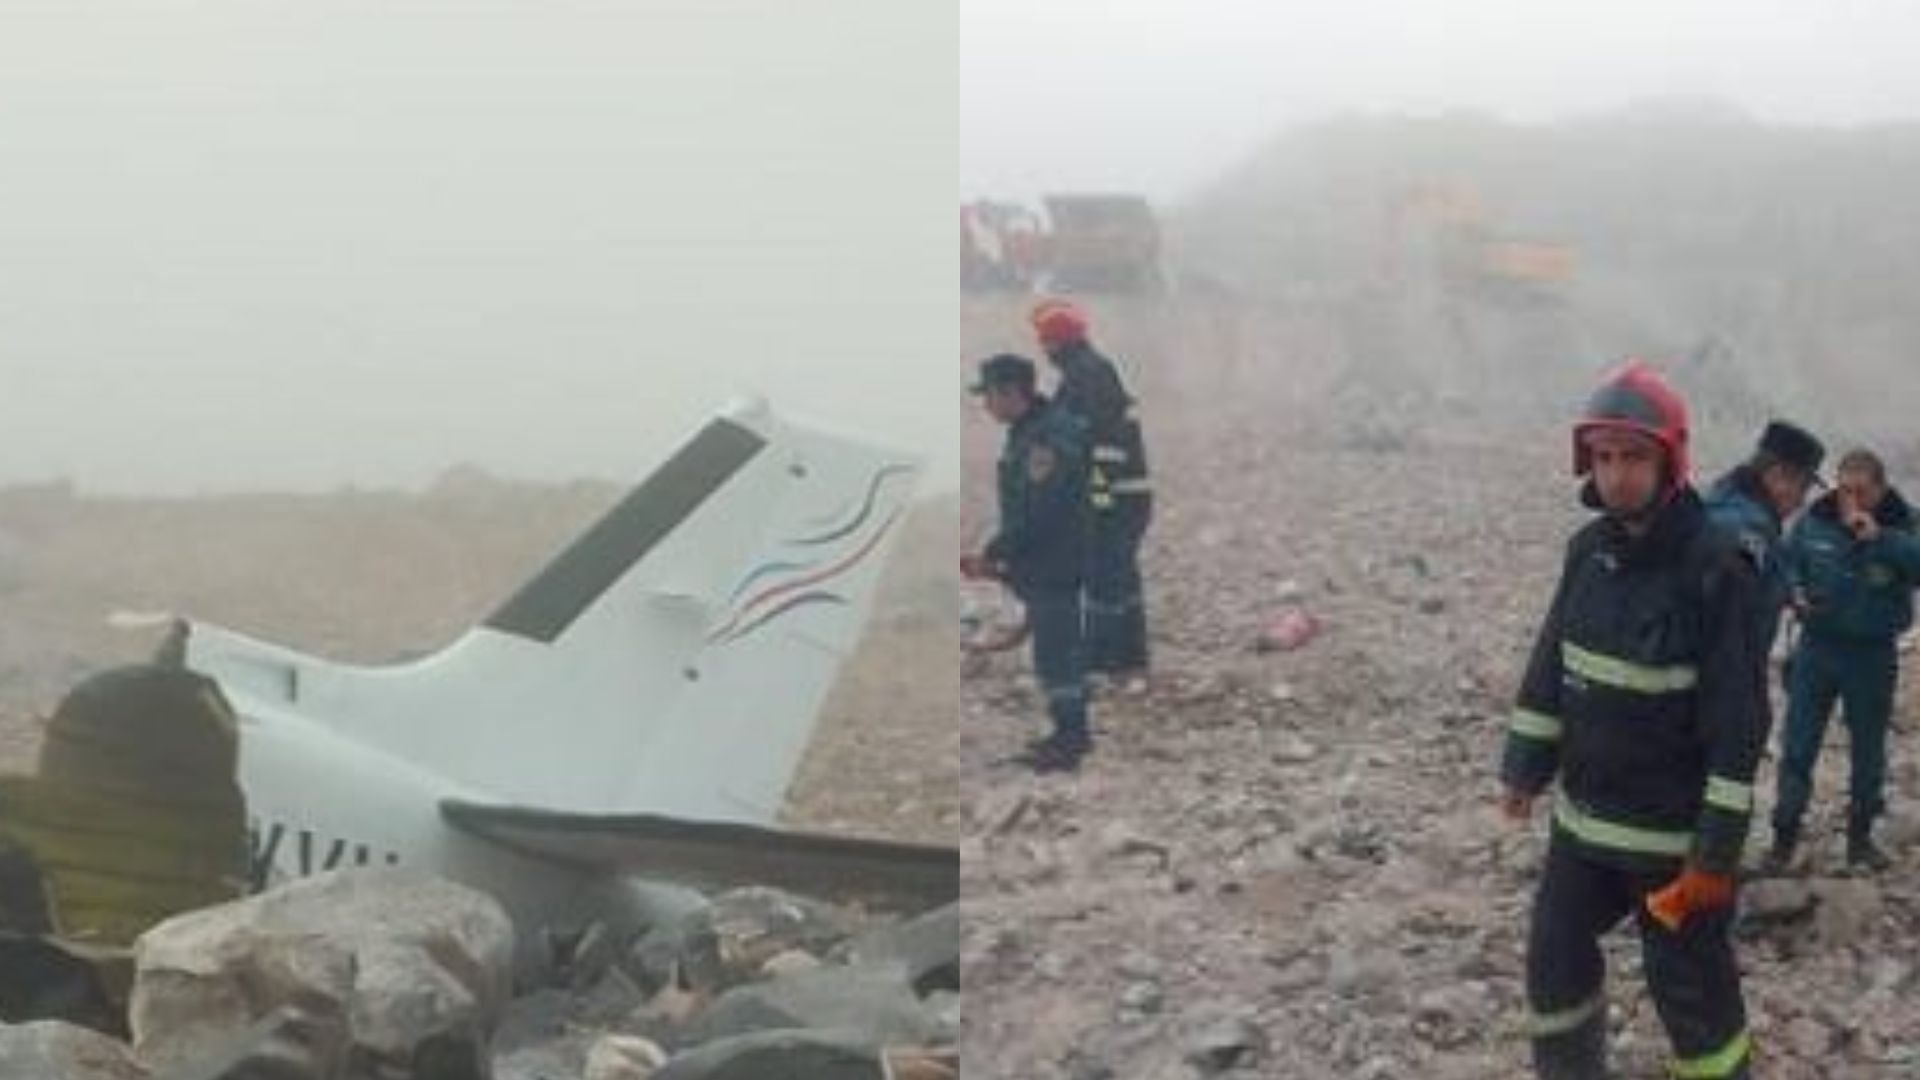 Падение самолета в Армении 1.12.22 - кто погиб, сколько жертв 